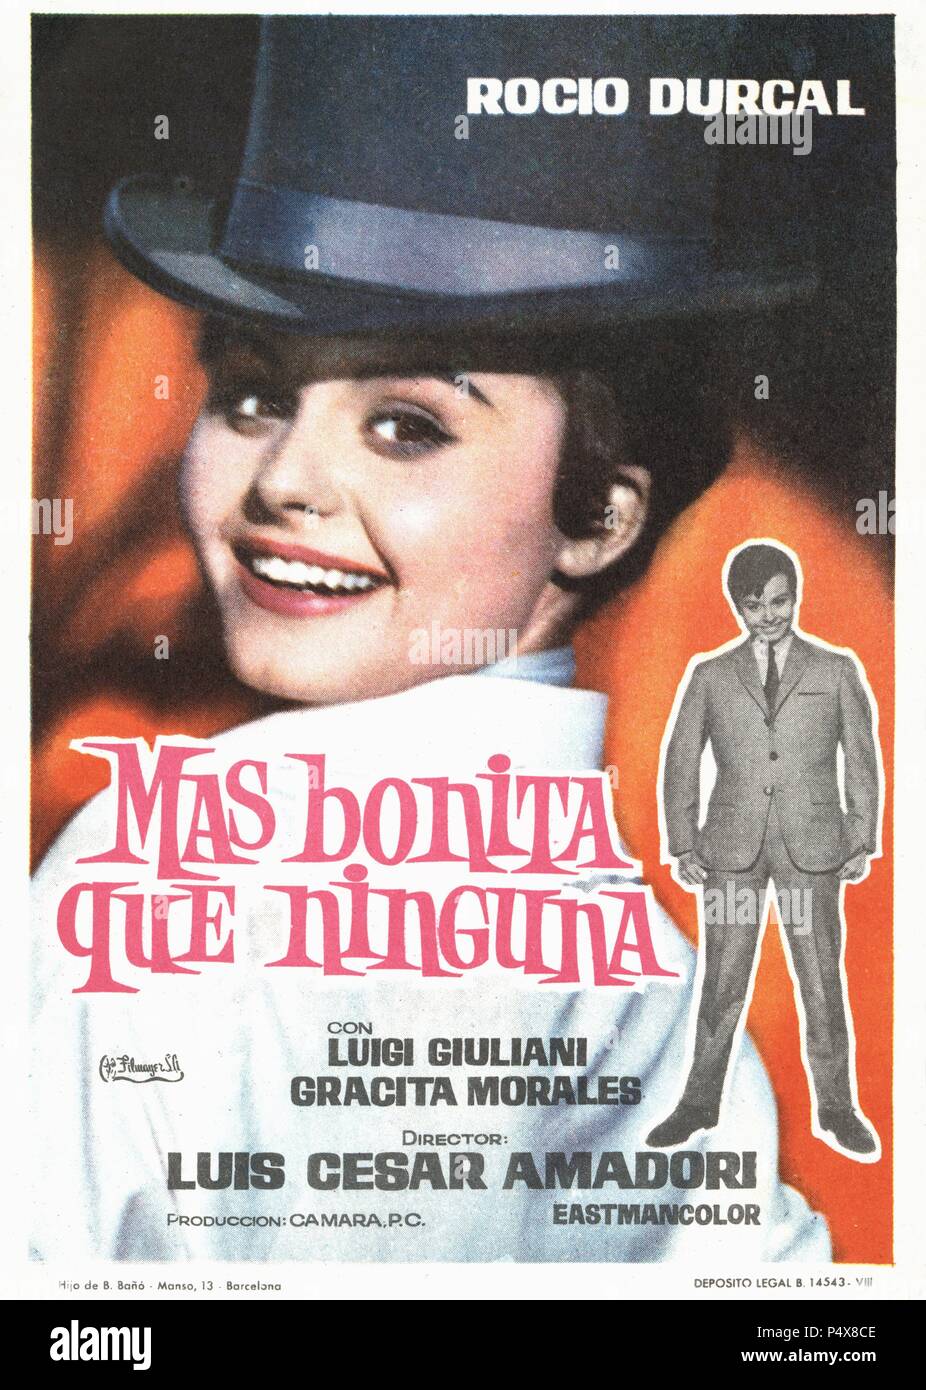 Kartell de la película Más bonita que ninguna, con Rocío Dúrcal y Luigi Giuliani, dirigida por Luis César amadori. España, 1965. Stockfoto